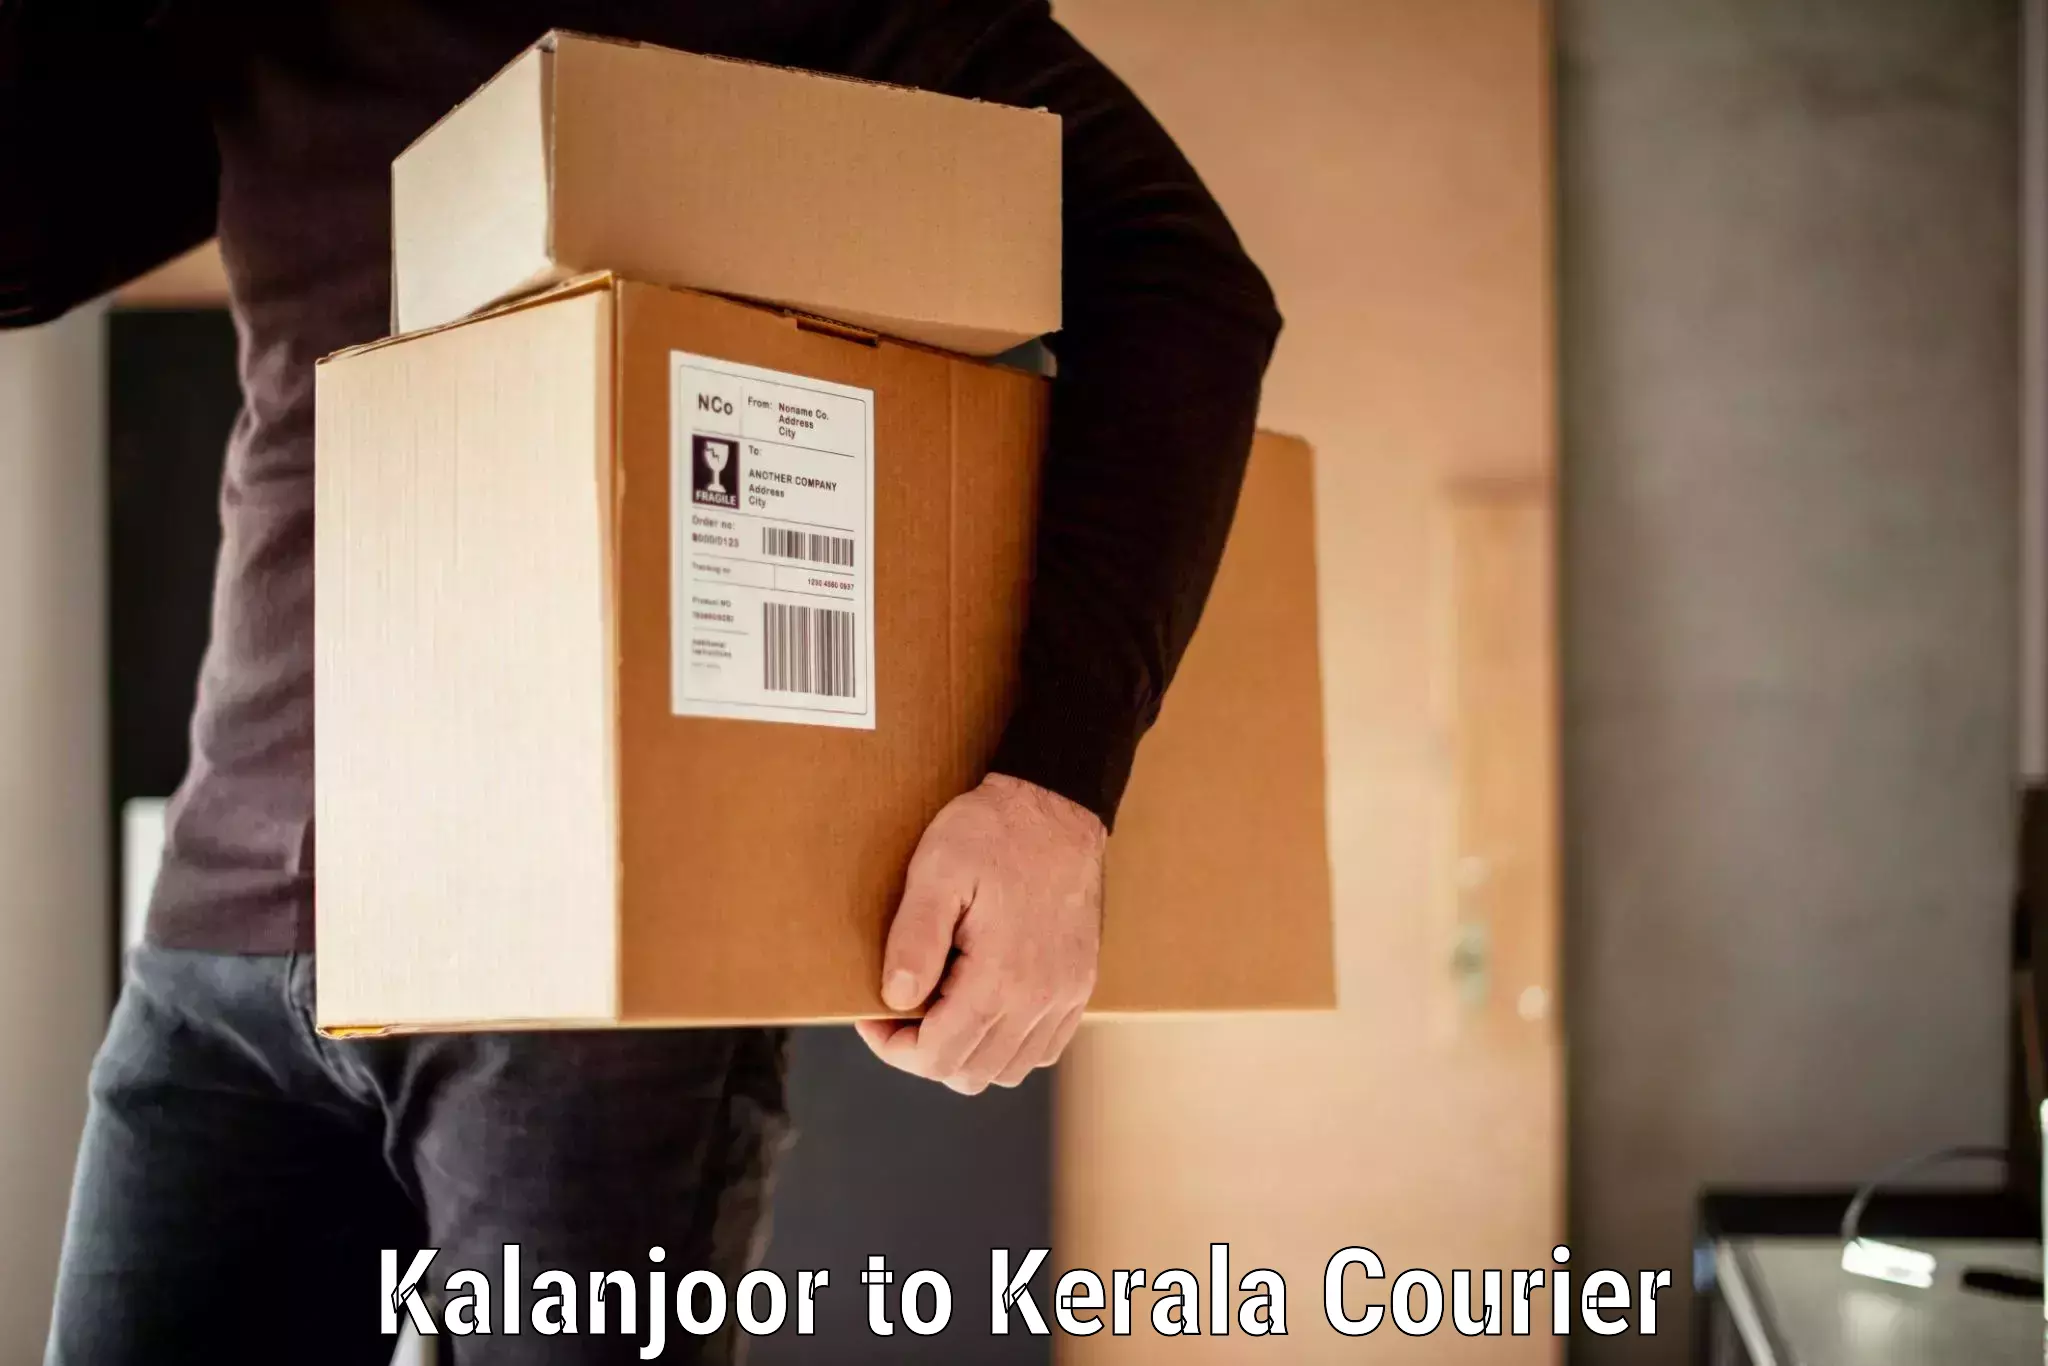 Baggage transport estimate Kalanjoor to Panayathamparamba